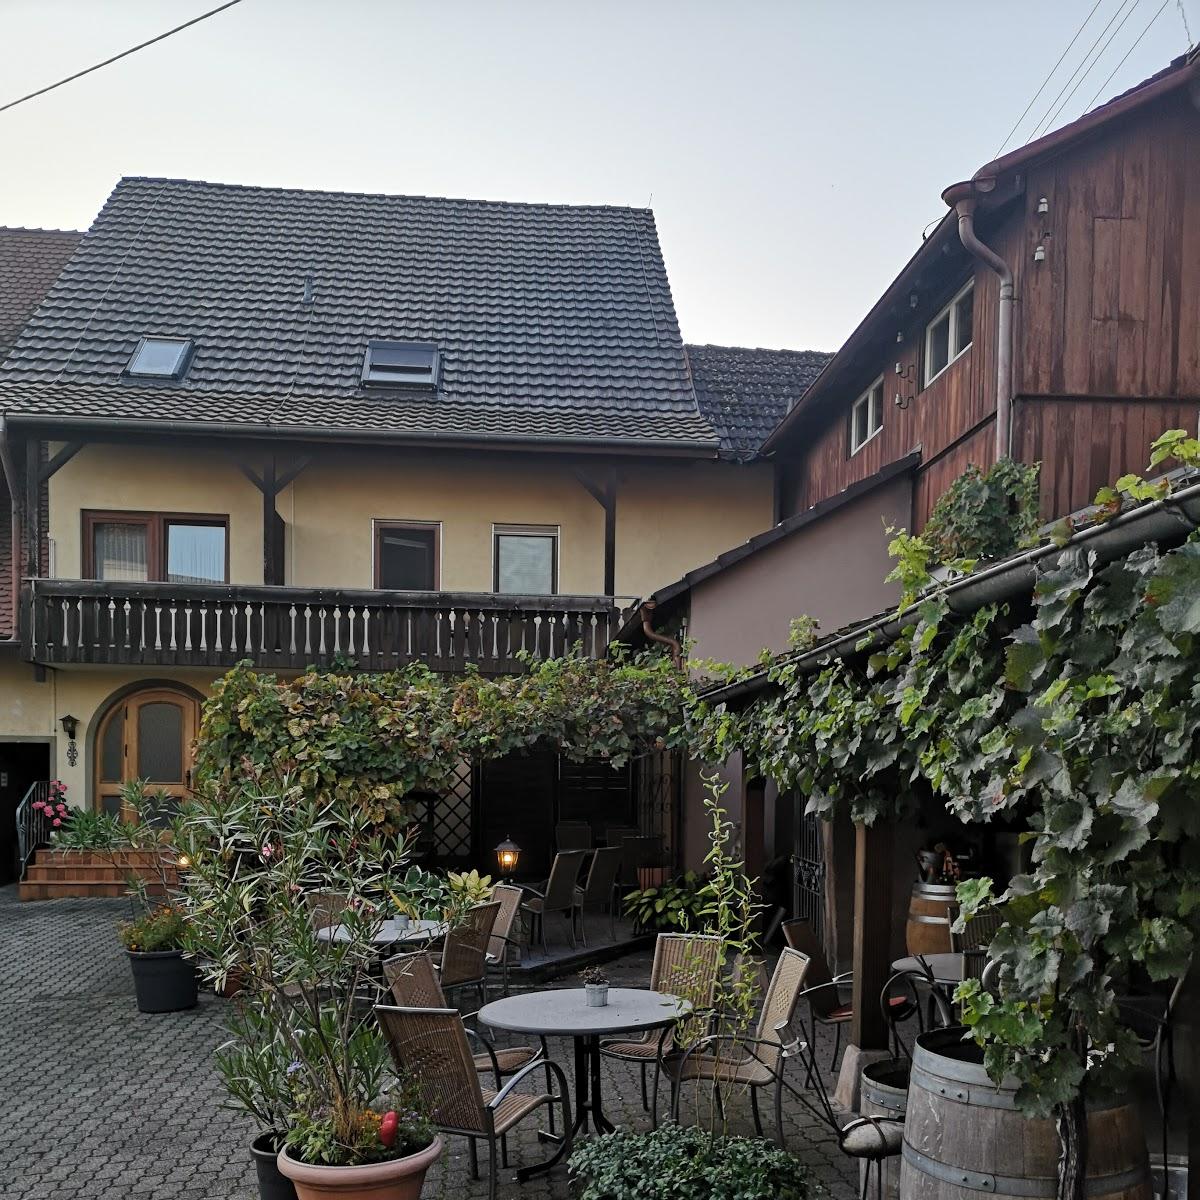 Restaurant "Landgasthof zum Schwanen" in Buggingen